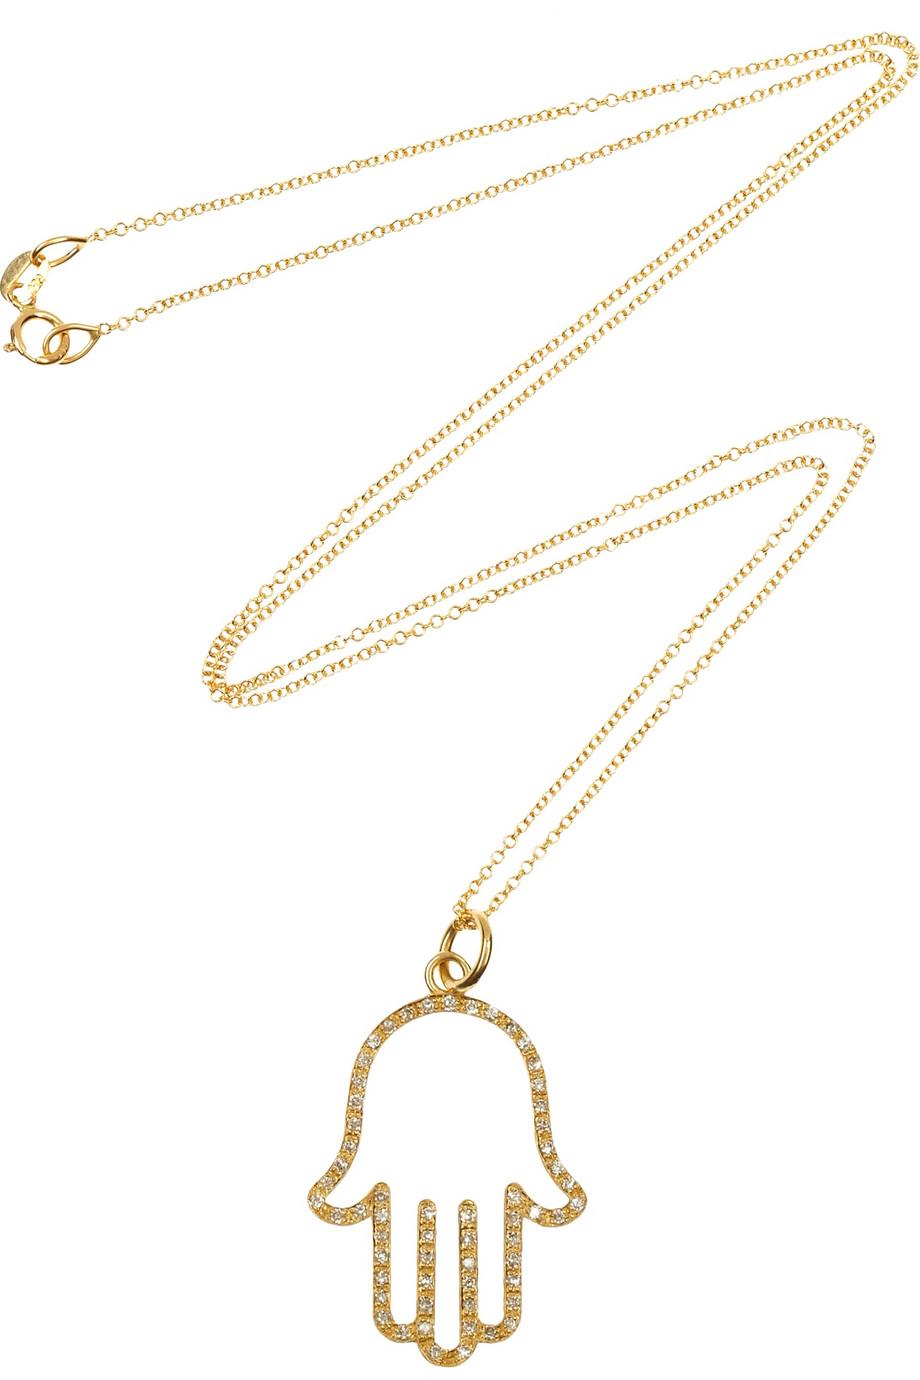 Jennifer Meyer 18kt yellow gold and diamond hamsa necklace